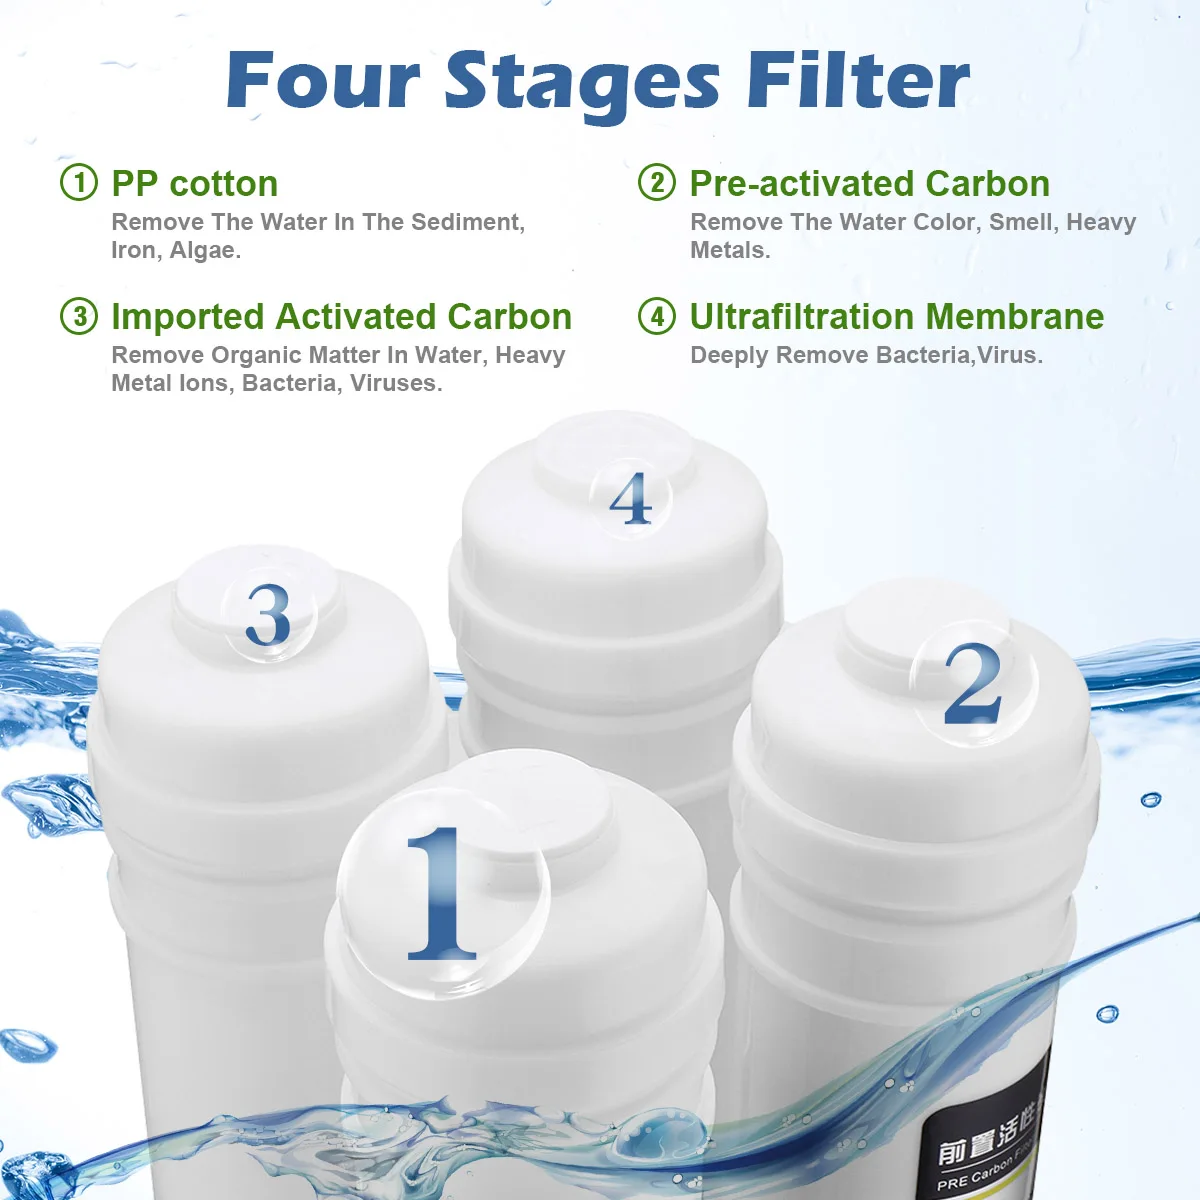 Pilt /540/4-etapp-uf-ultrafiltratsiooni-joogivee-filter-süsteemi-4_share/upload.jpeg